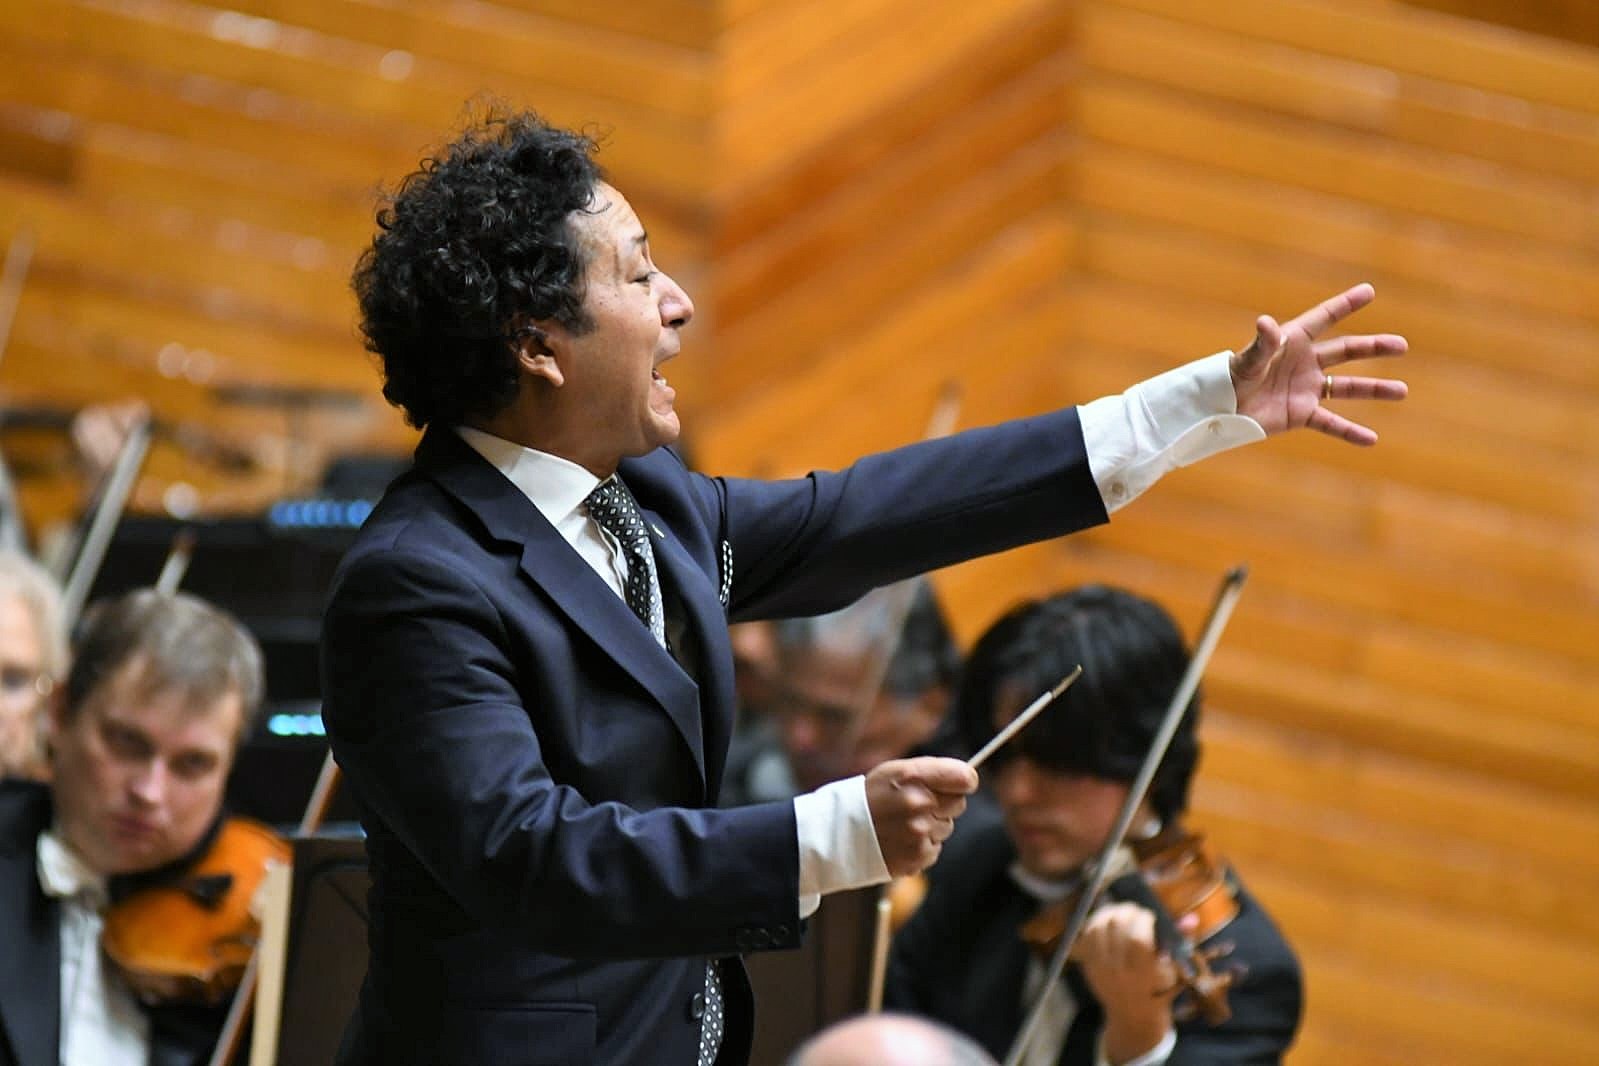 La Orquesta Sinfónica del Estado de México Deleita a su Público de Toluca